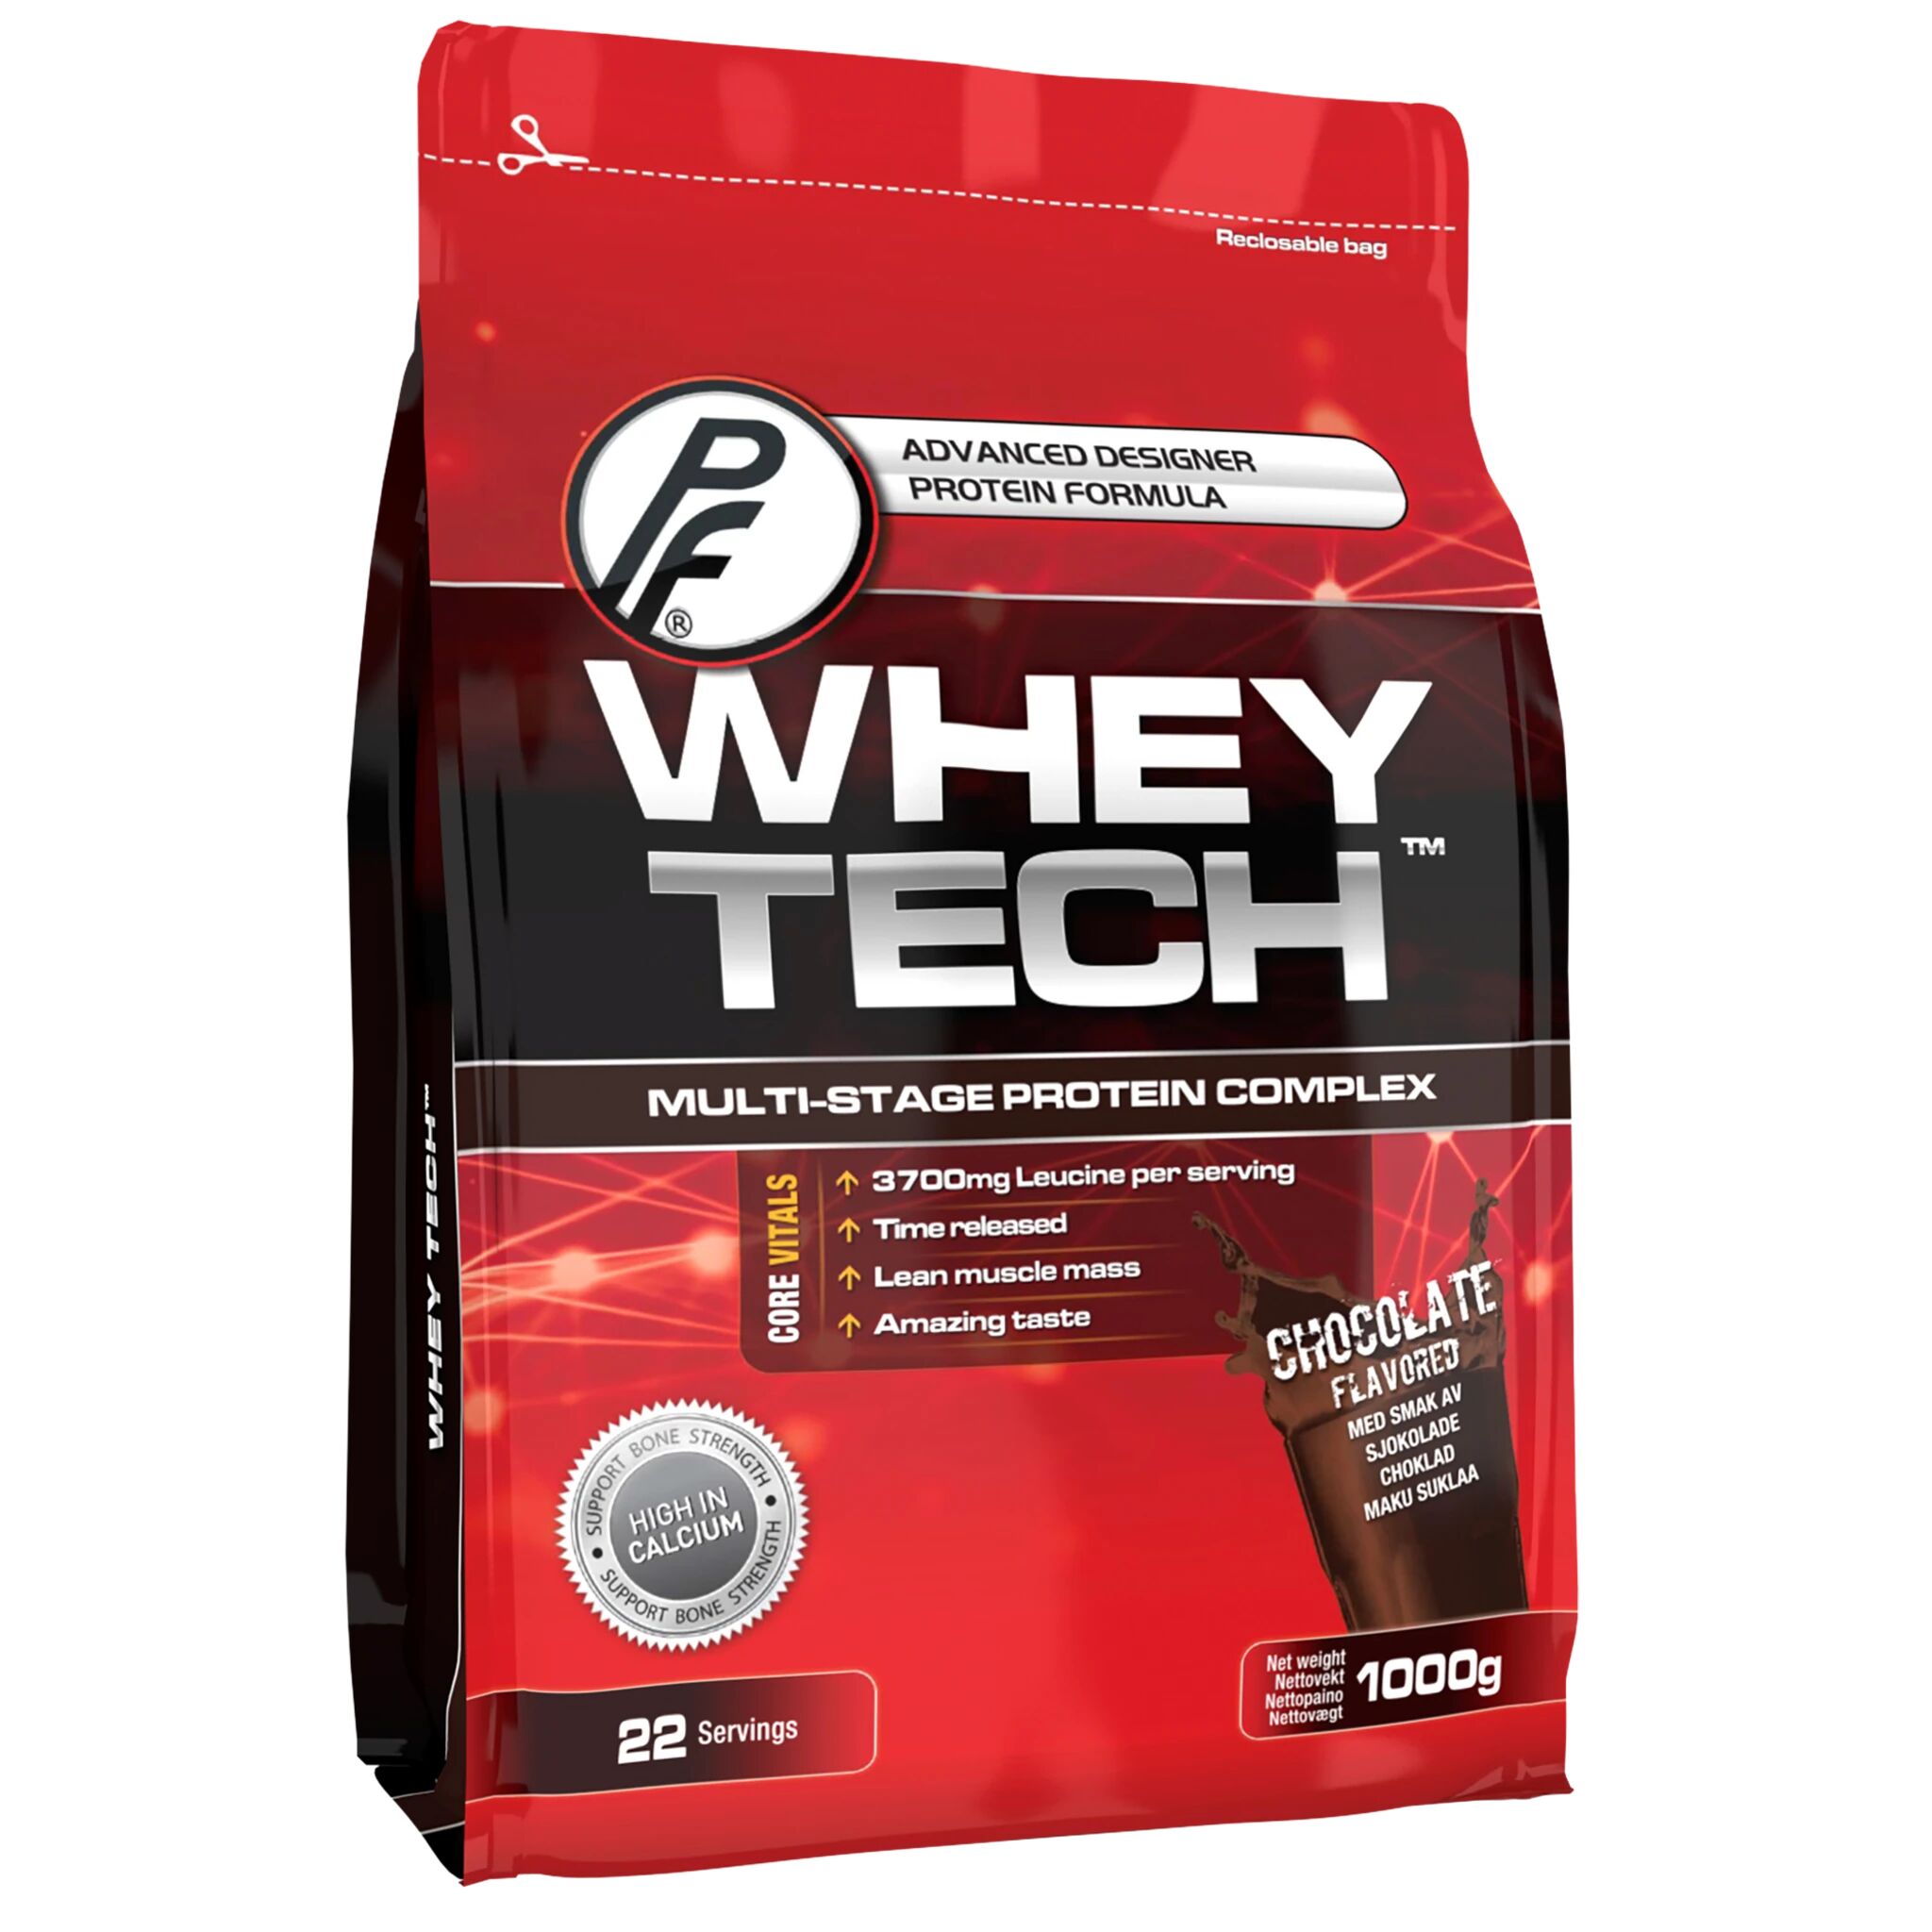 Proteinfabrikken Whey Tech 1 kg, proteinpulver 1000g CHOCOLATE